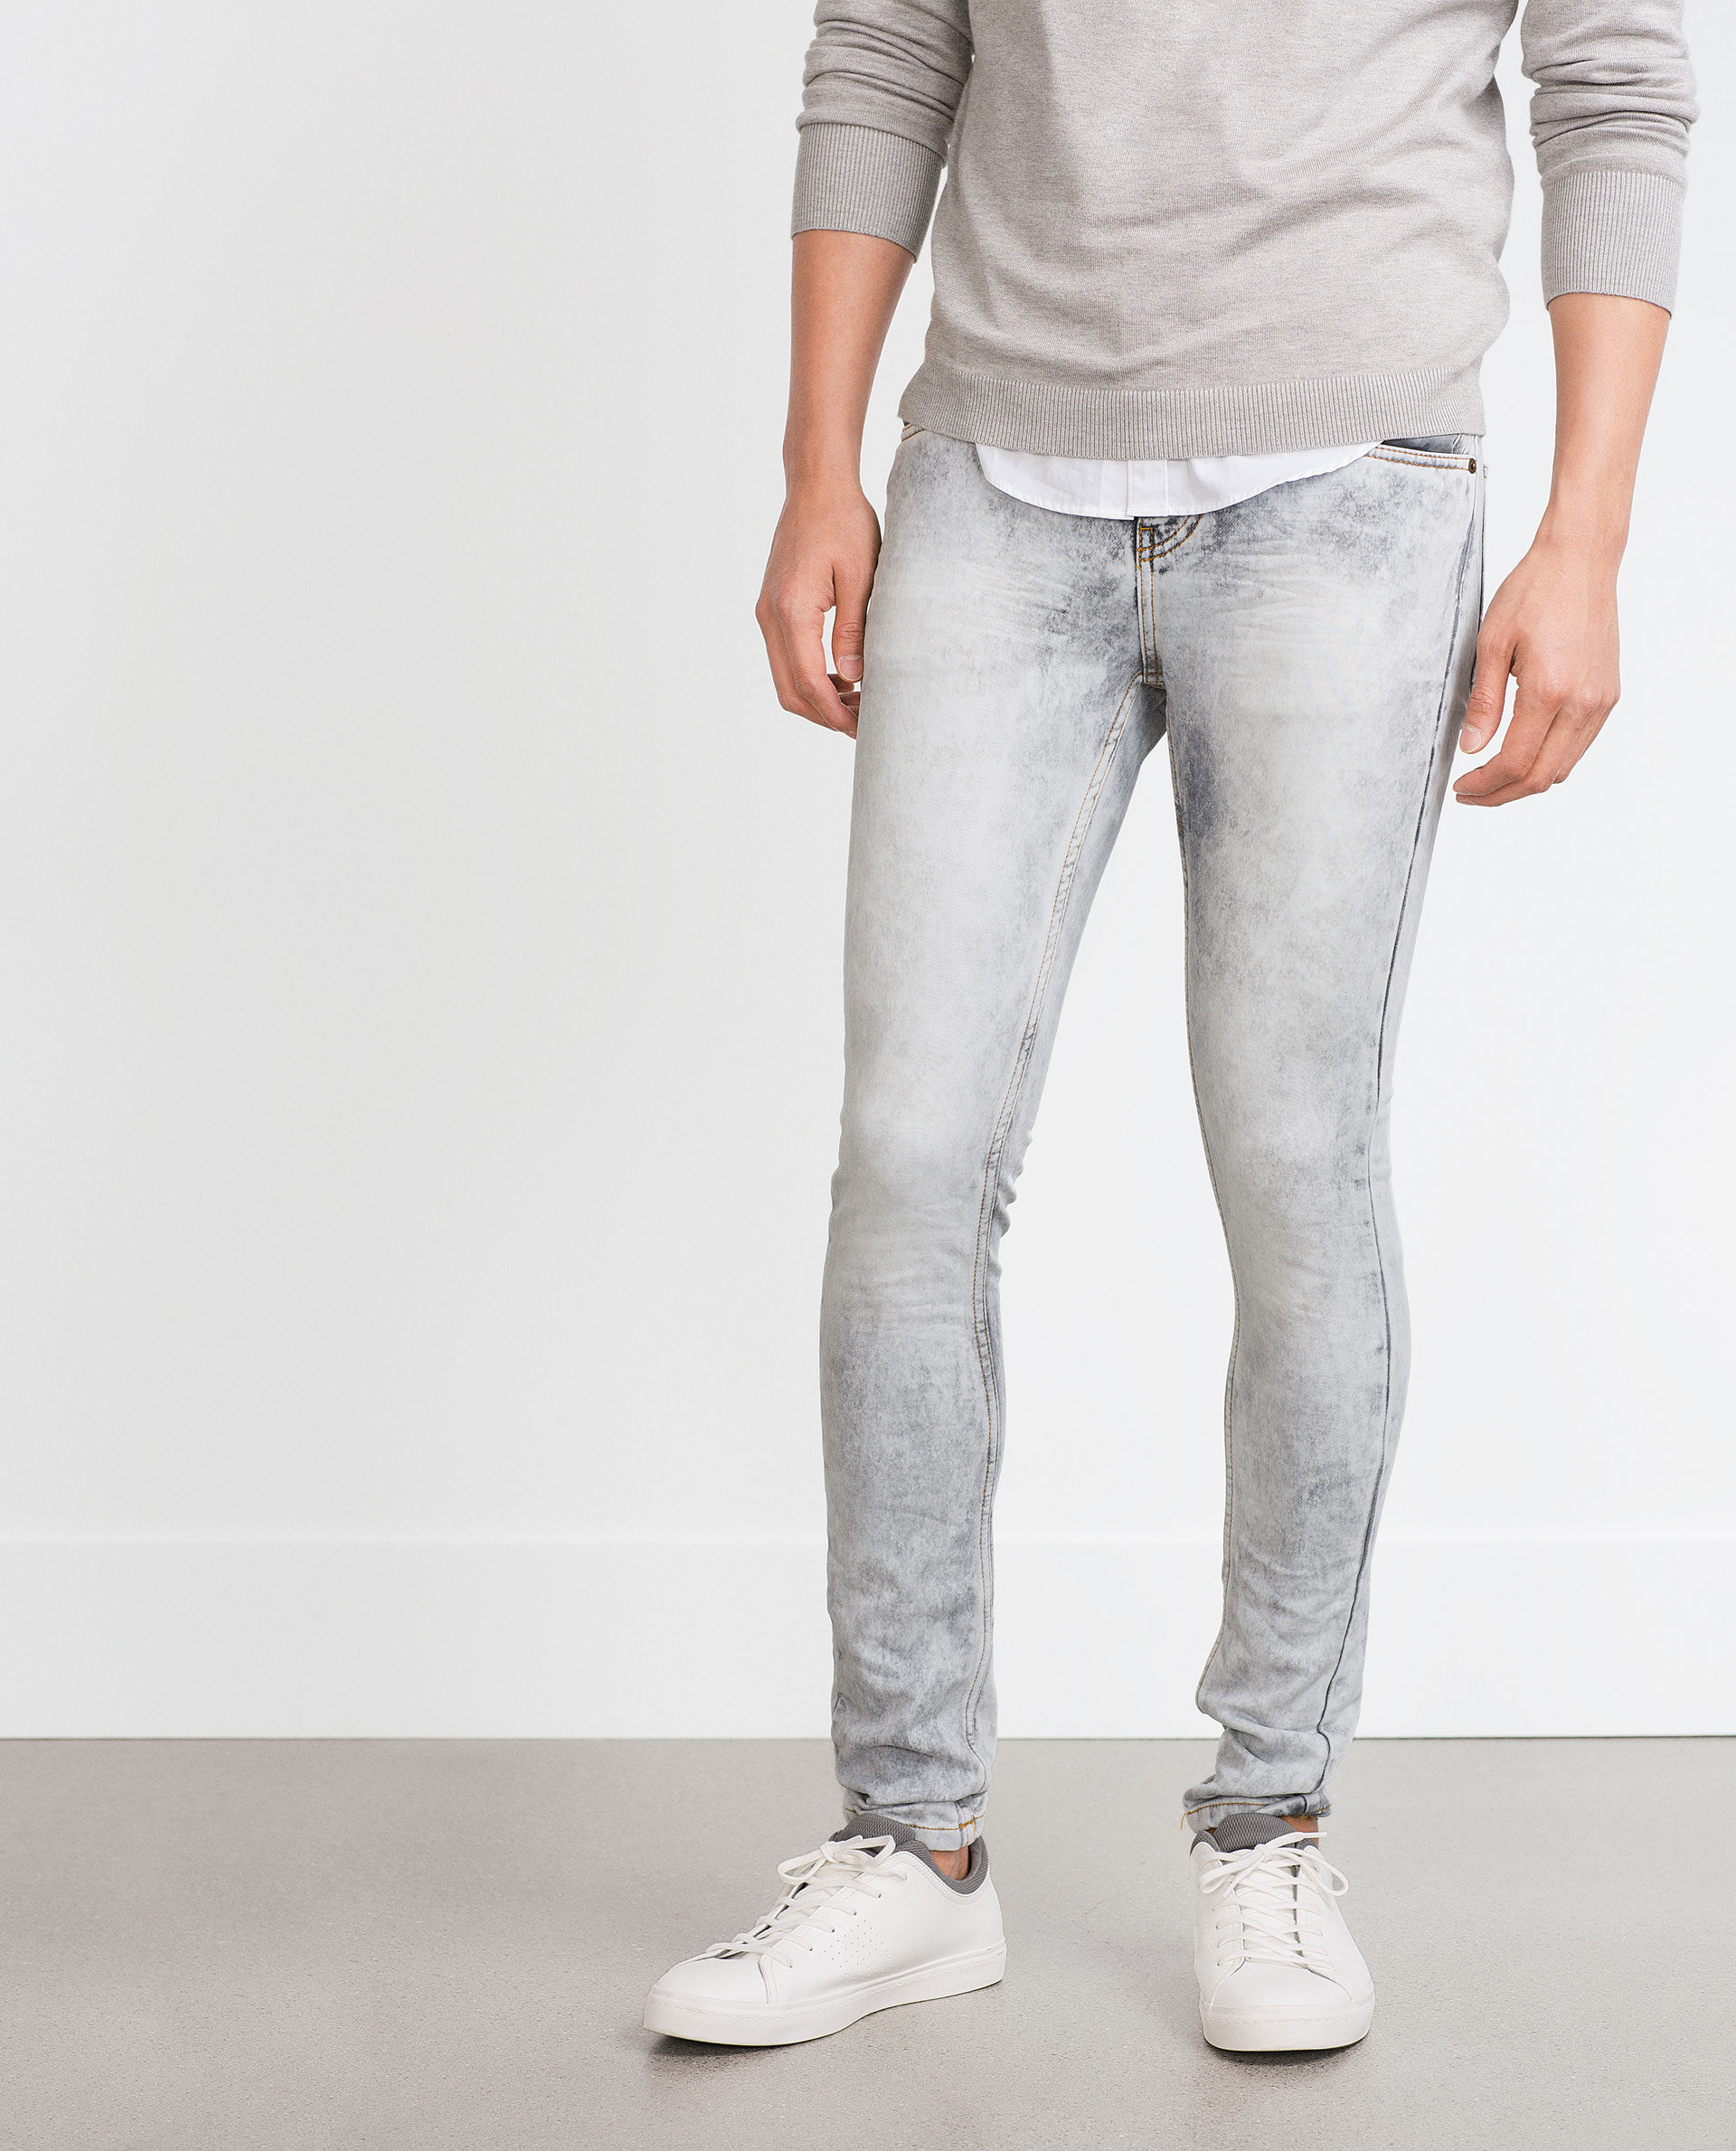 Topman Skinny Jeans - Kimcil I